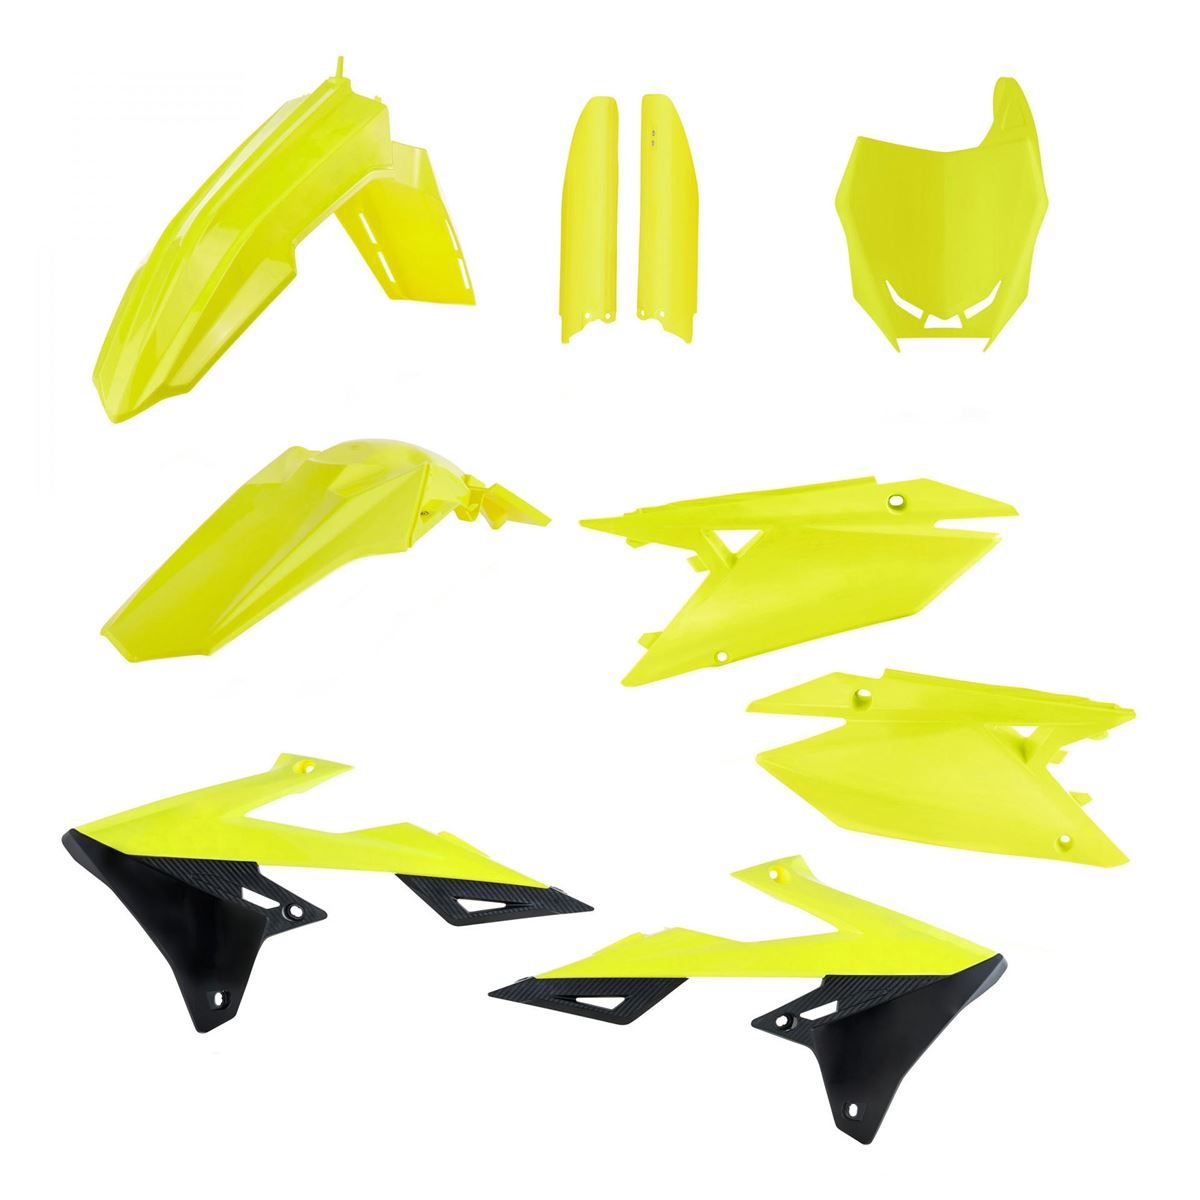 Acerbis Kit Plastiche completo Full-Kit Suzuki RMZ 250/450, Flo Giallo/Nero